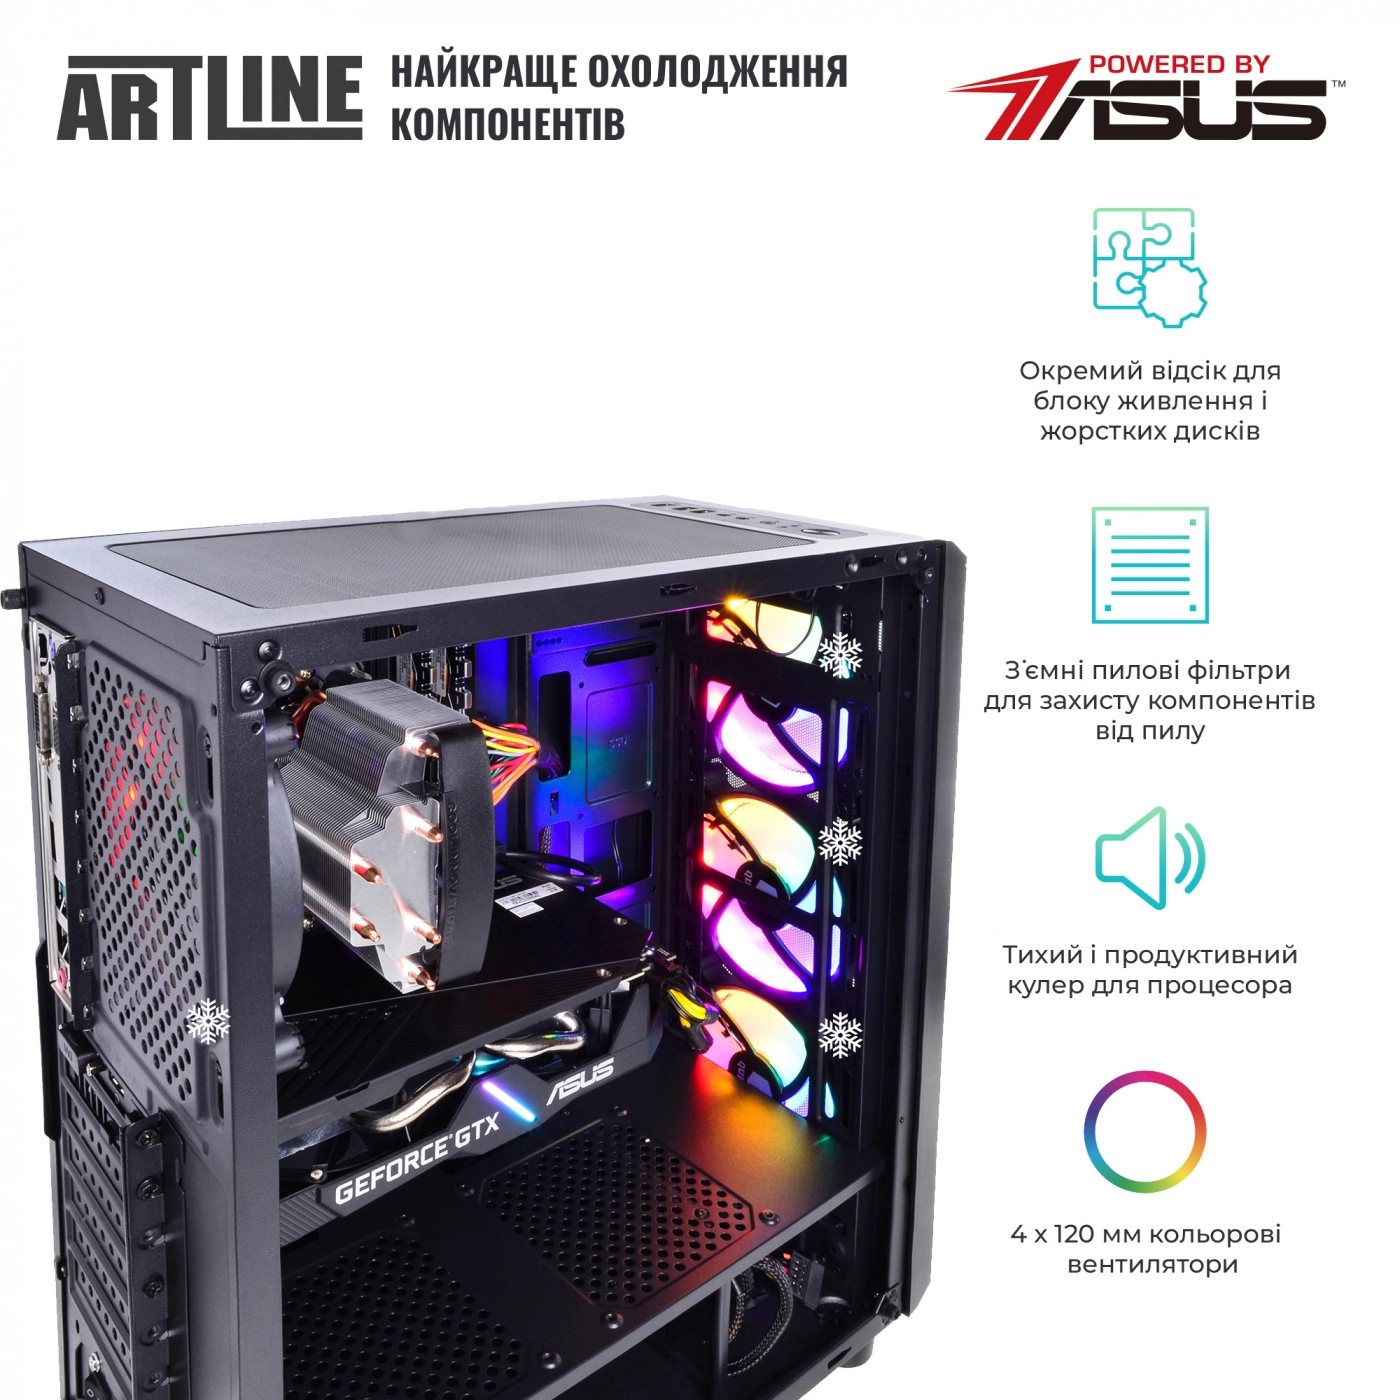 Купить Компьютер ARTLINE Gaming X39v62 - фото 3